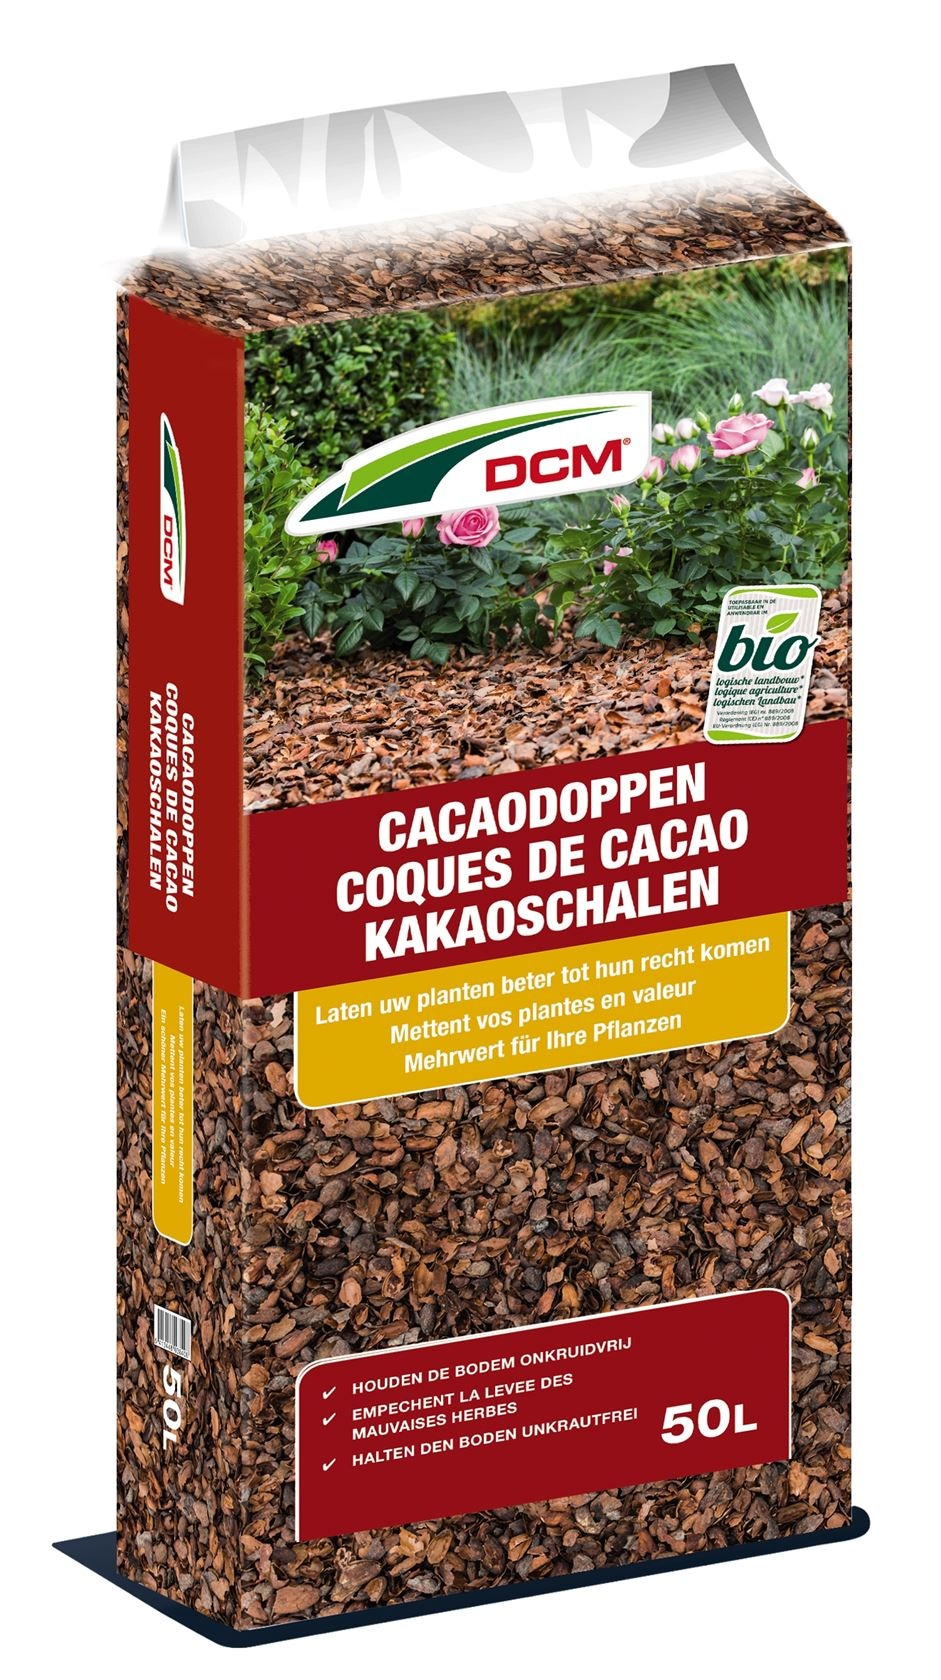 DCM Cacaodoppen per pallet